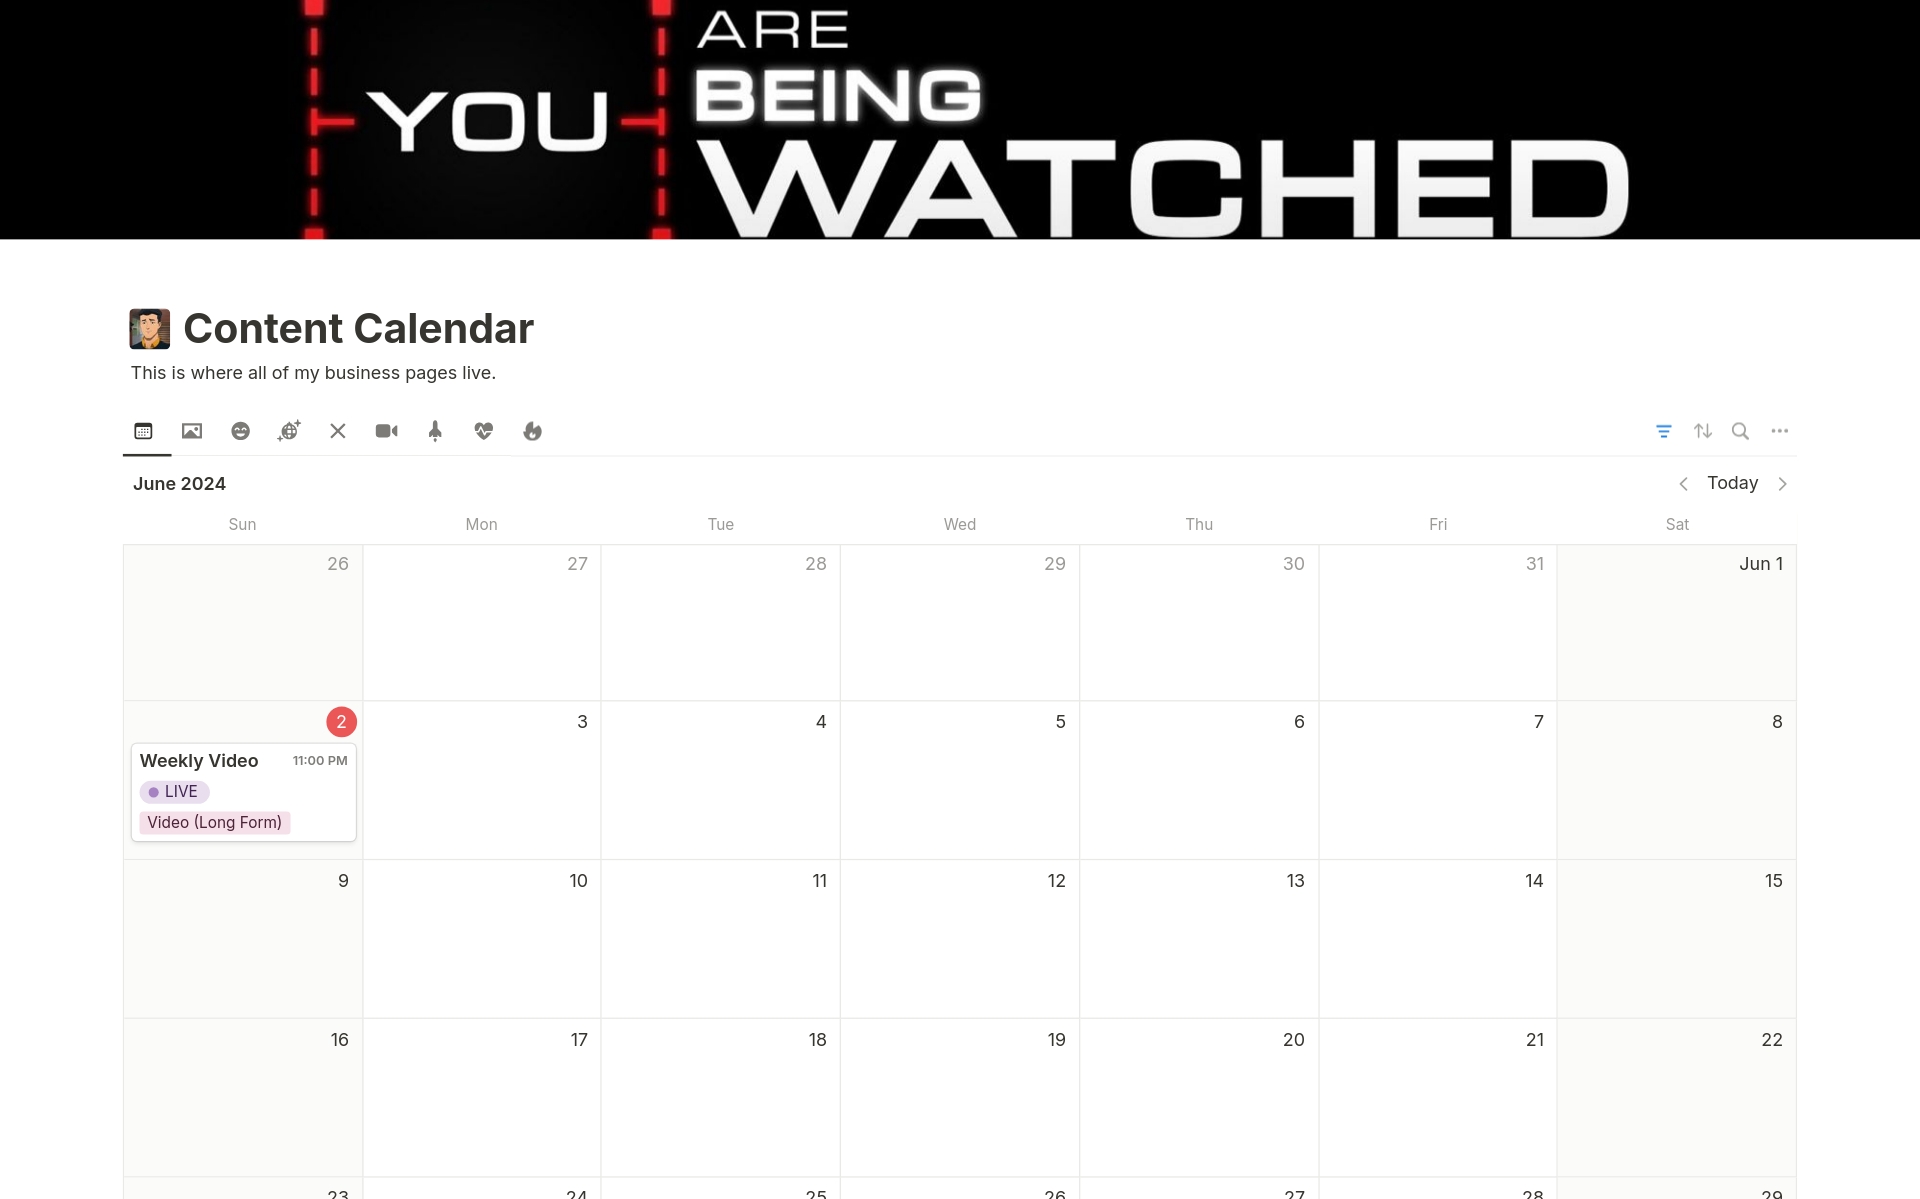 Vista previa de una plantilla para The Content Calendar